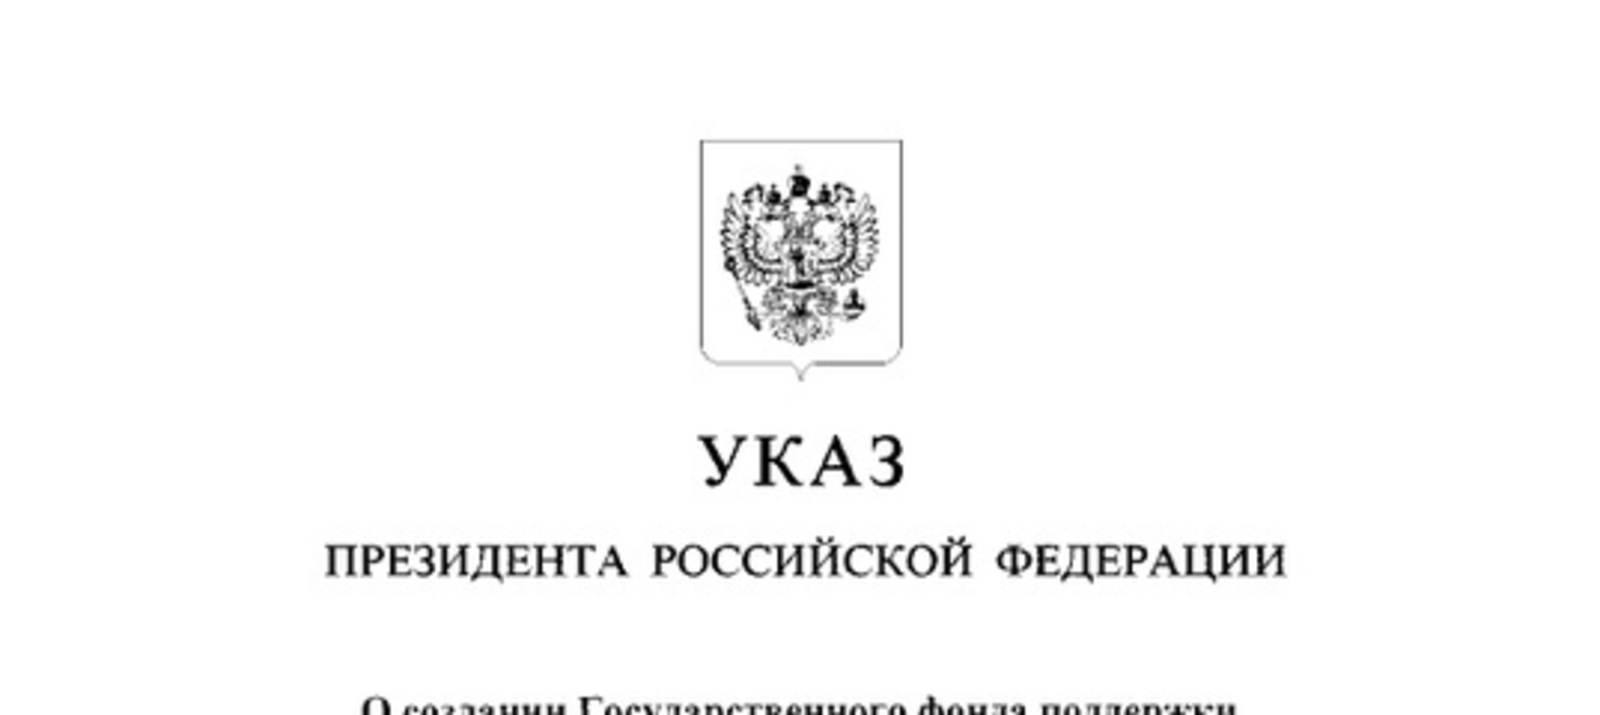 Владимир Путин подписал Указ о создании ГосФонда поддержки участников СВО и семей погибших бойцов